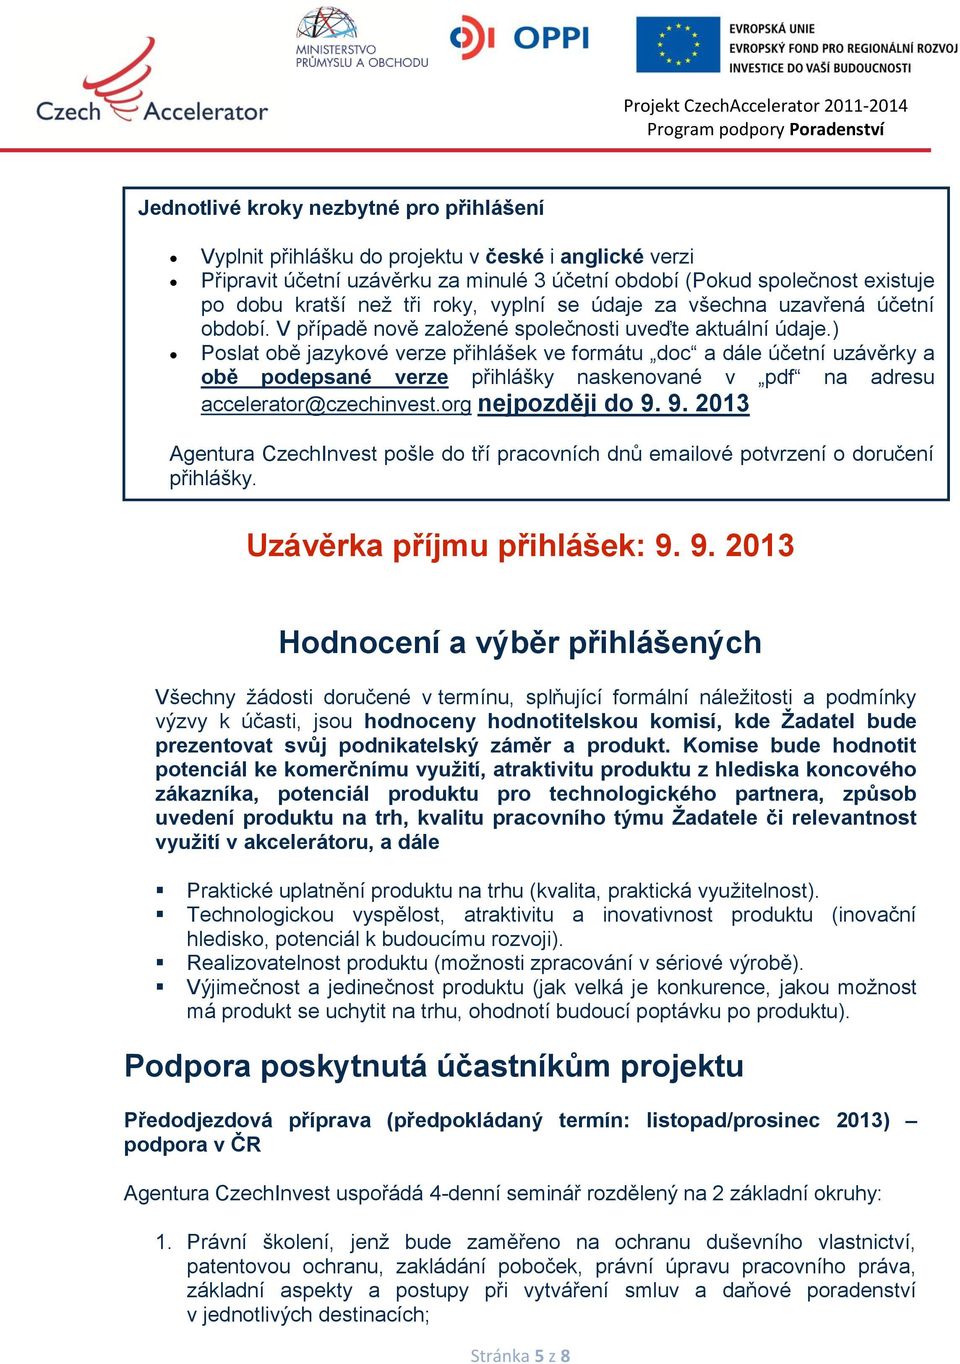 ) Poslat obě jazykové verze přihlášek ve formátu doc a dále účetní uzávěrky a obě podepsané verze přihlášky naskenované v pdf na adresu accelerator@czechinvest.org nejpozději do 9.